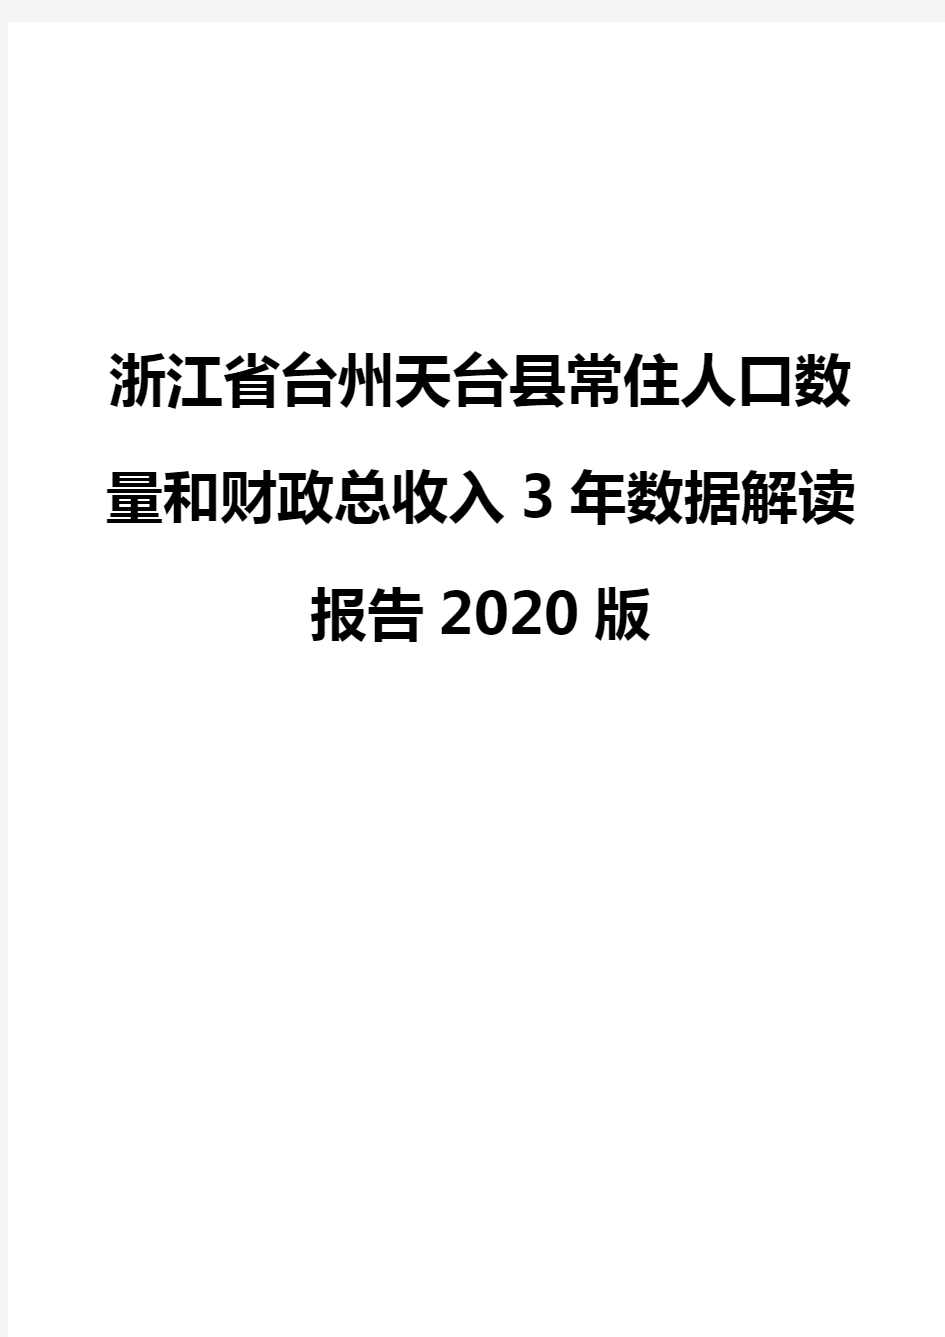 浙江省台州天台县常住人口数量和财政总收入3年数据解读报告2020版